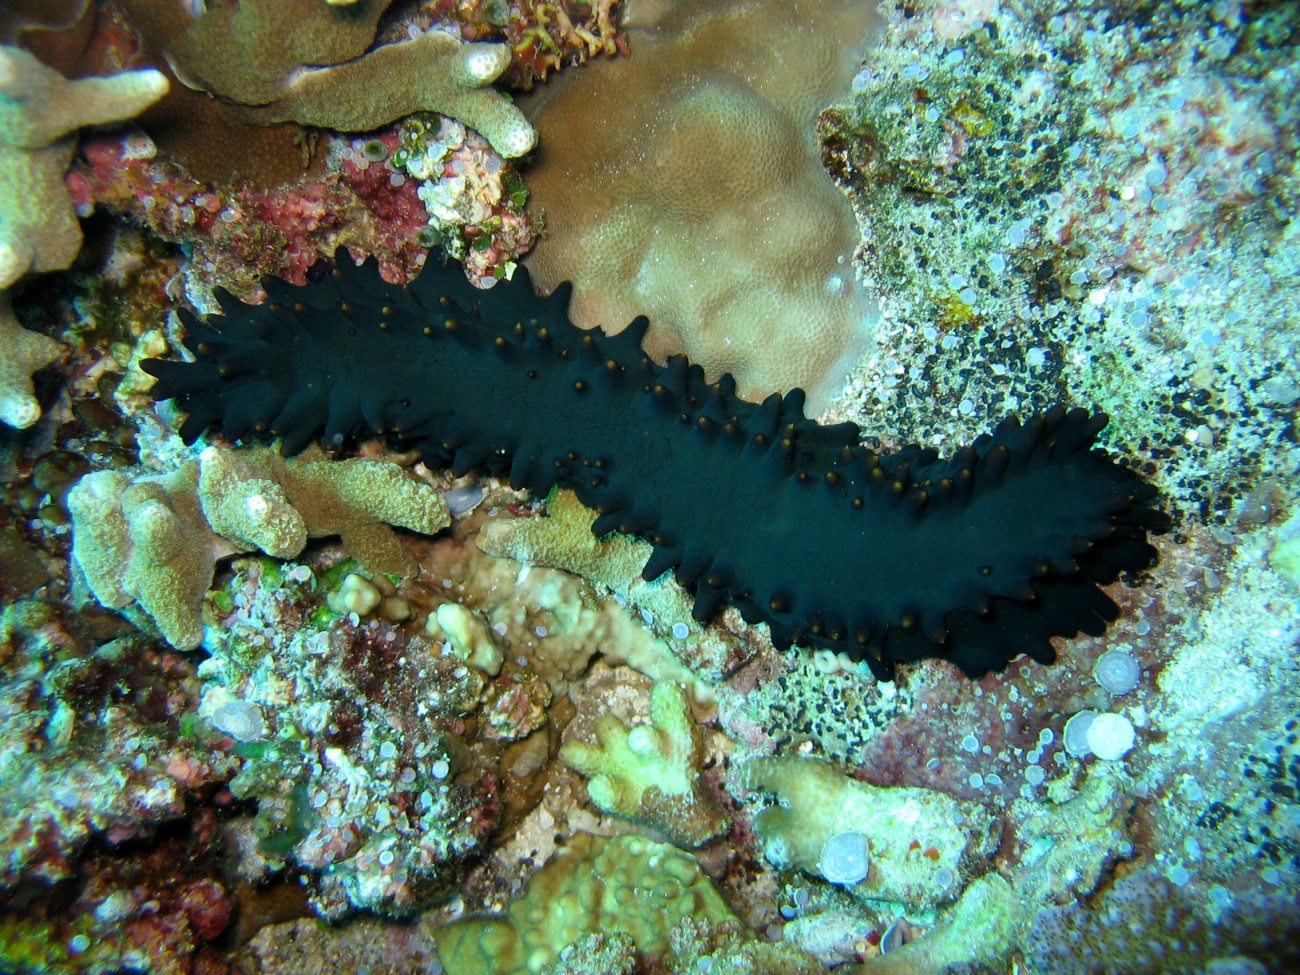 A sea cucumber (Stichopus chloronotus)